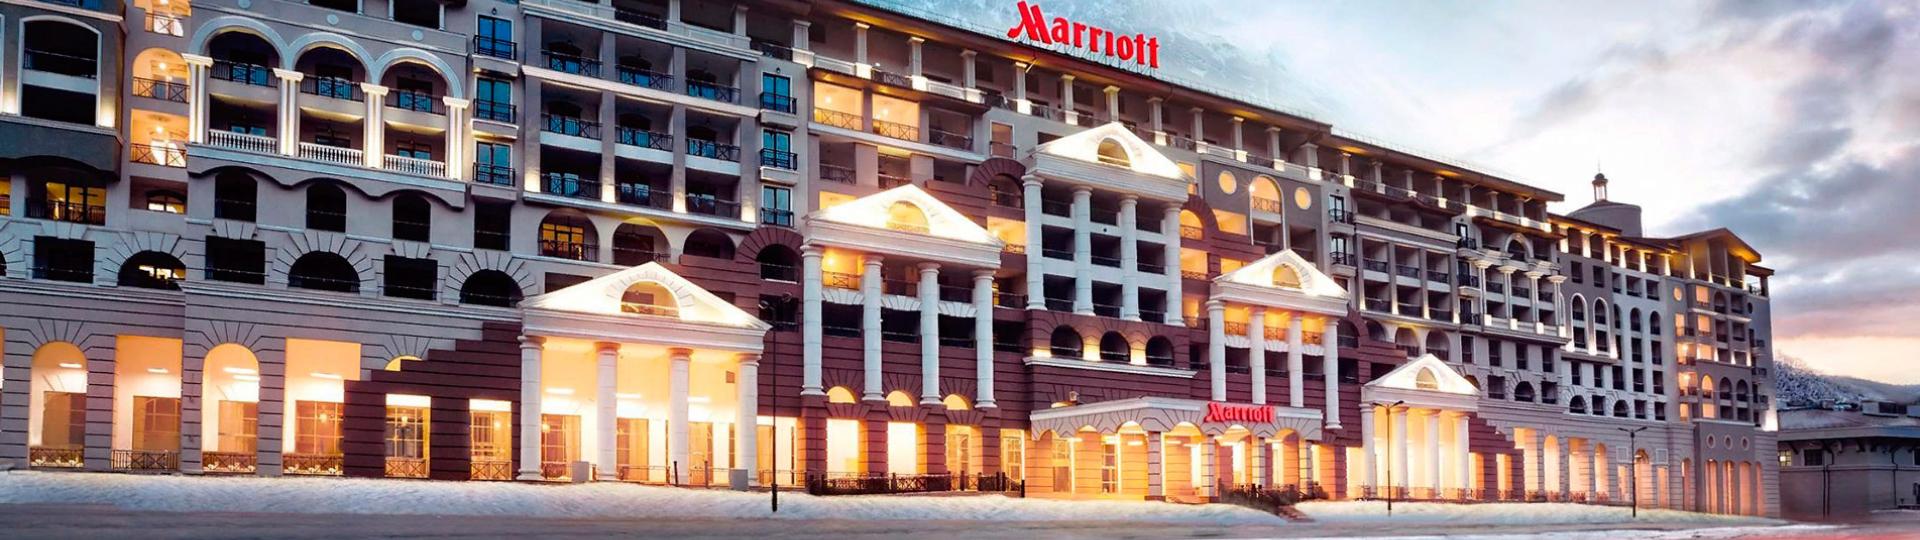 Отель Marriott 5* Hotel & SPA г. Сочи